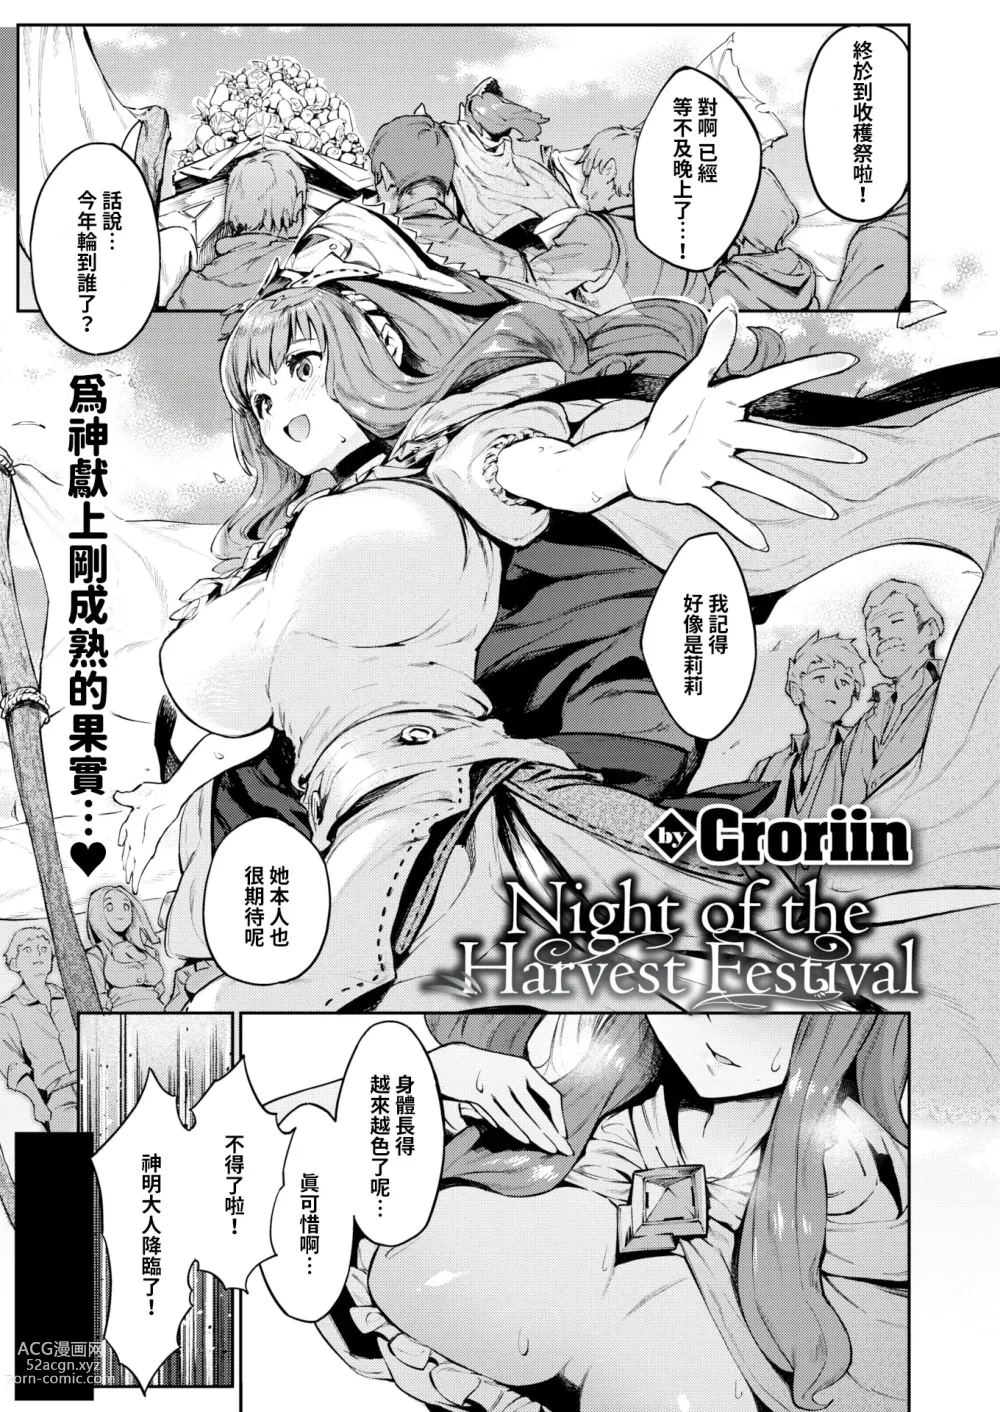 Page 1 of manga Shukaku-sai no yoru ni (uncensored)